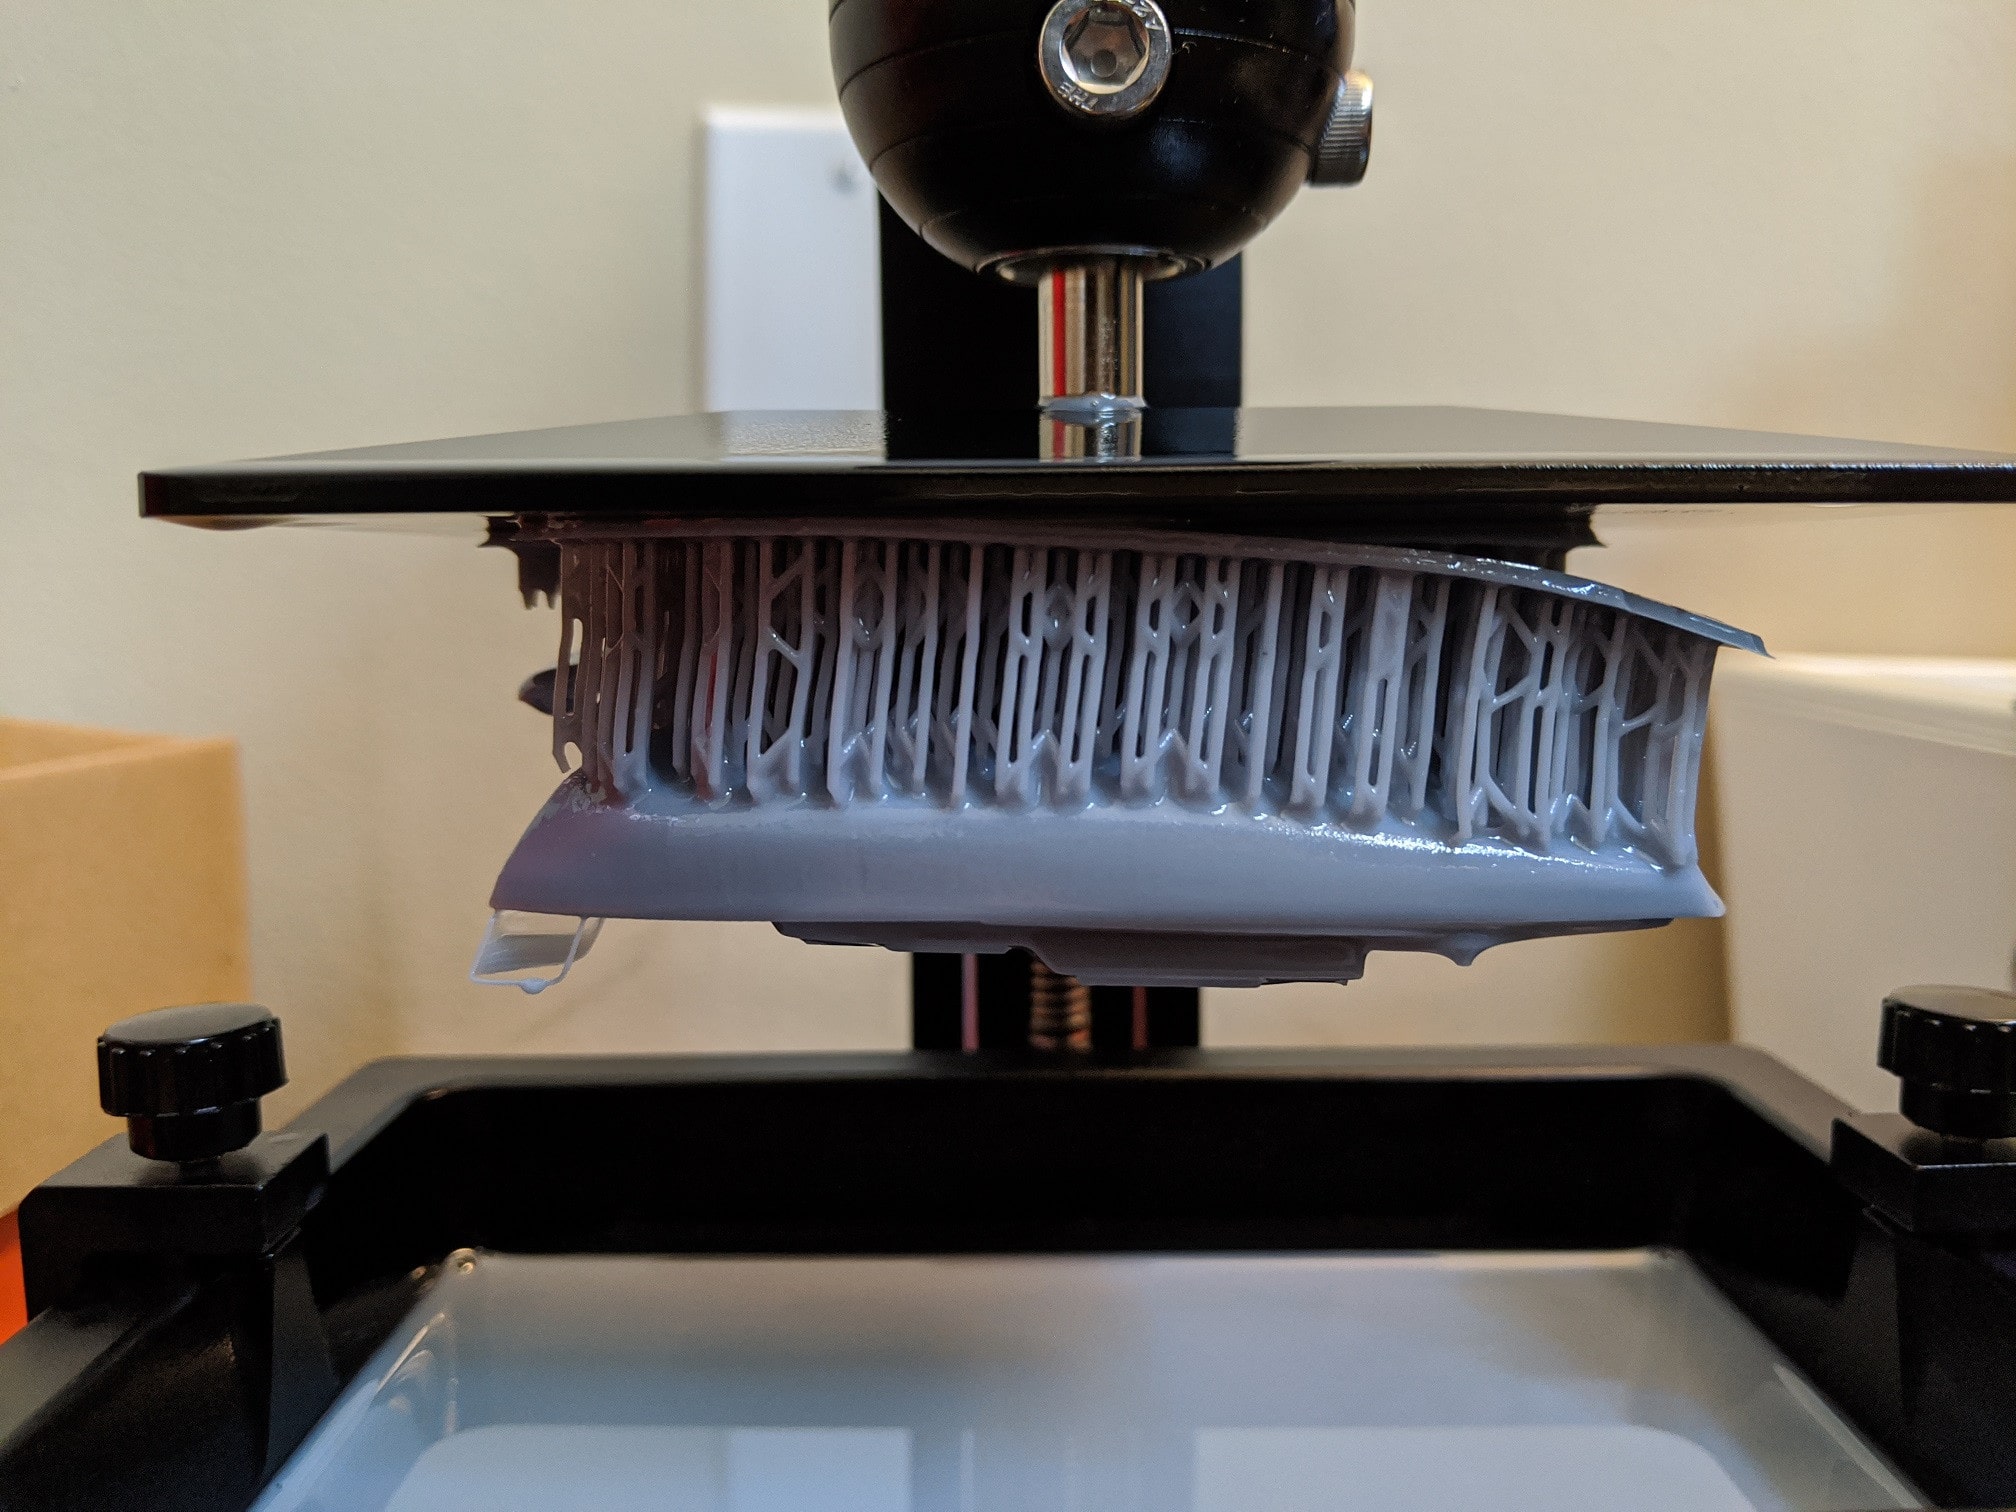 Maggiori informazioni su "Risoluzione dei problemi della stampa 3D a filamento e resina: guida completa"